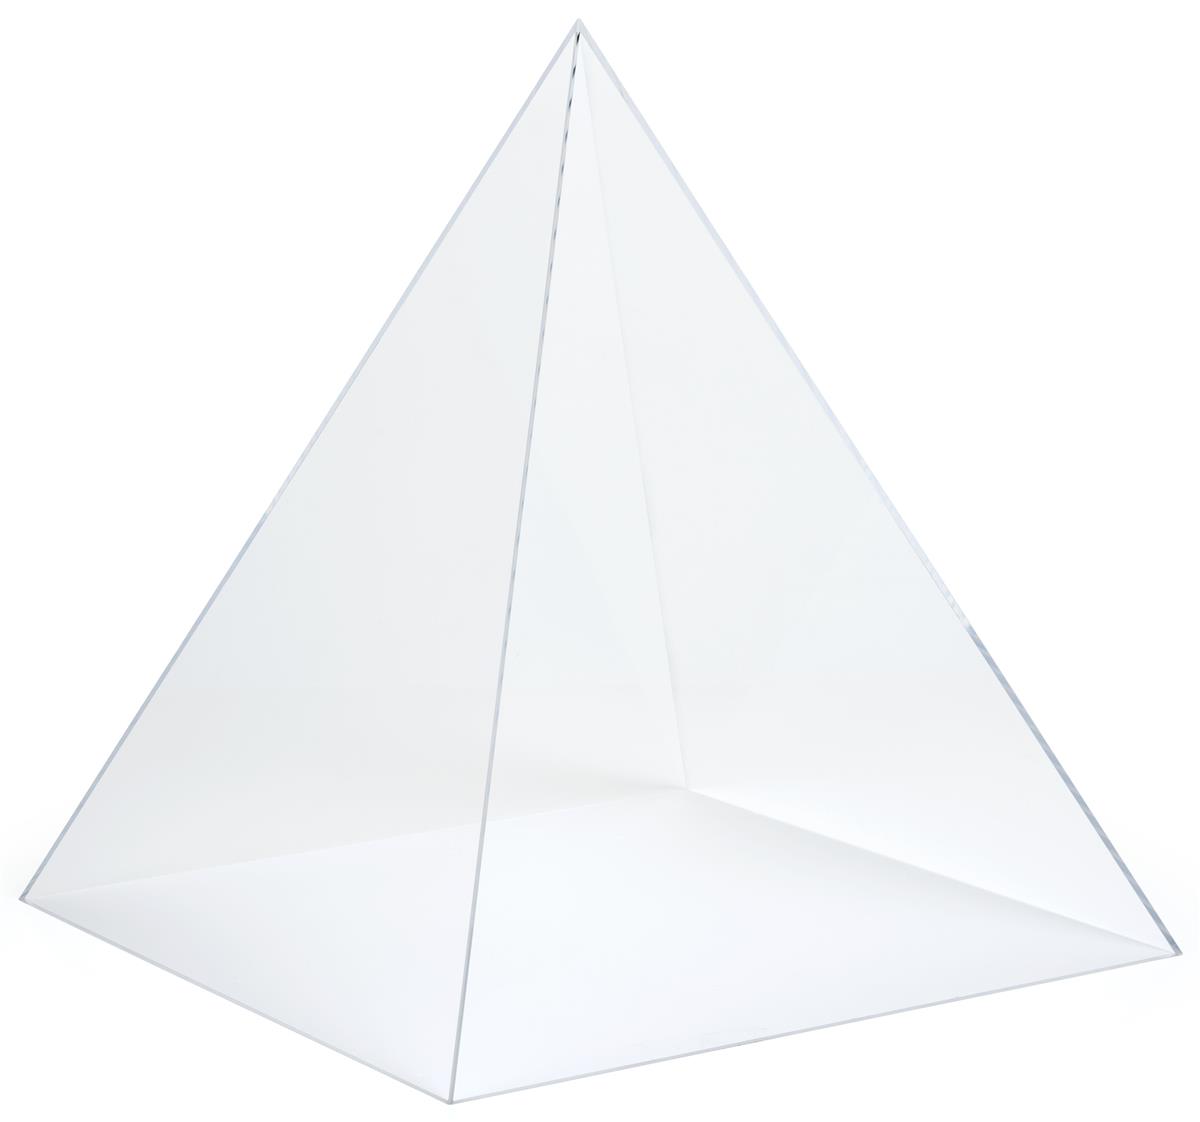 large acrylic pyramid